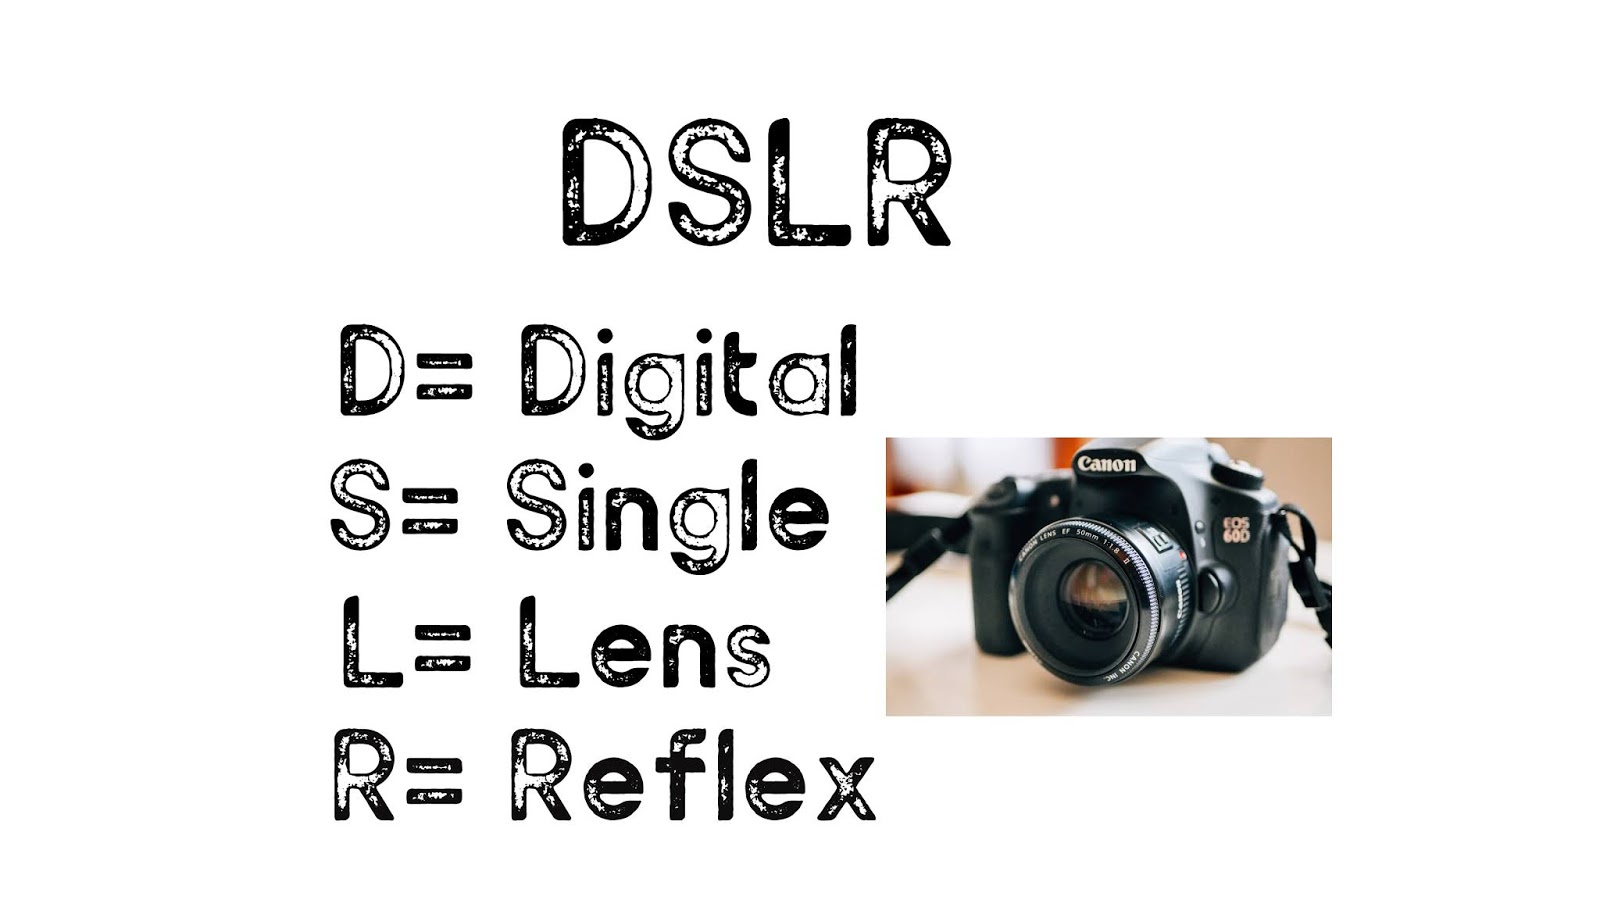 ¿Cuál es la forma completa de DSLR?